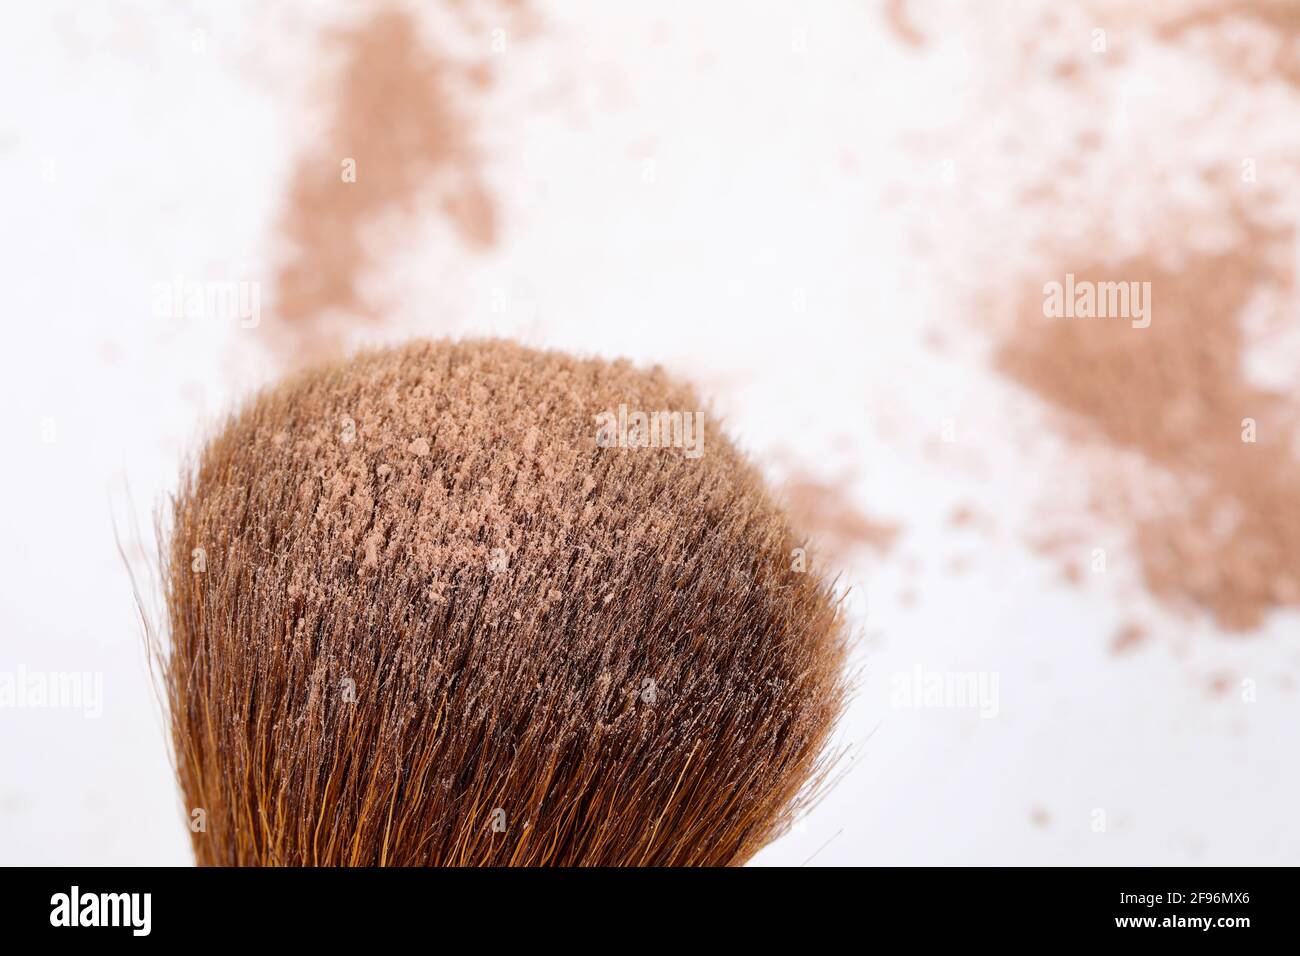 Polvere sfoltata e spazzola di trucco del viso di colore marrone scuro, isolata su sfondo bianco. Foto Stock